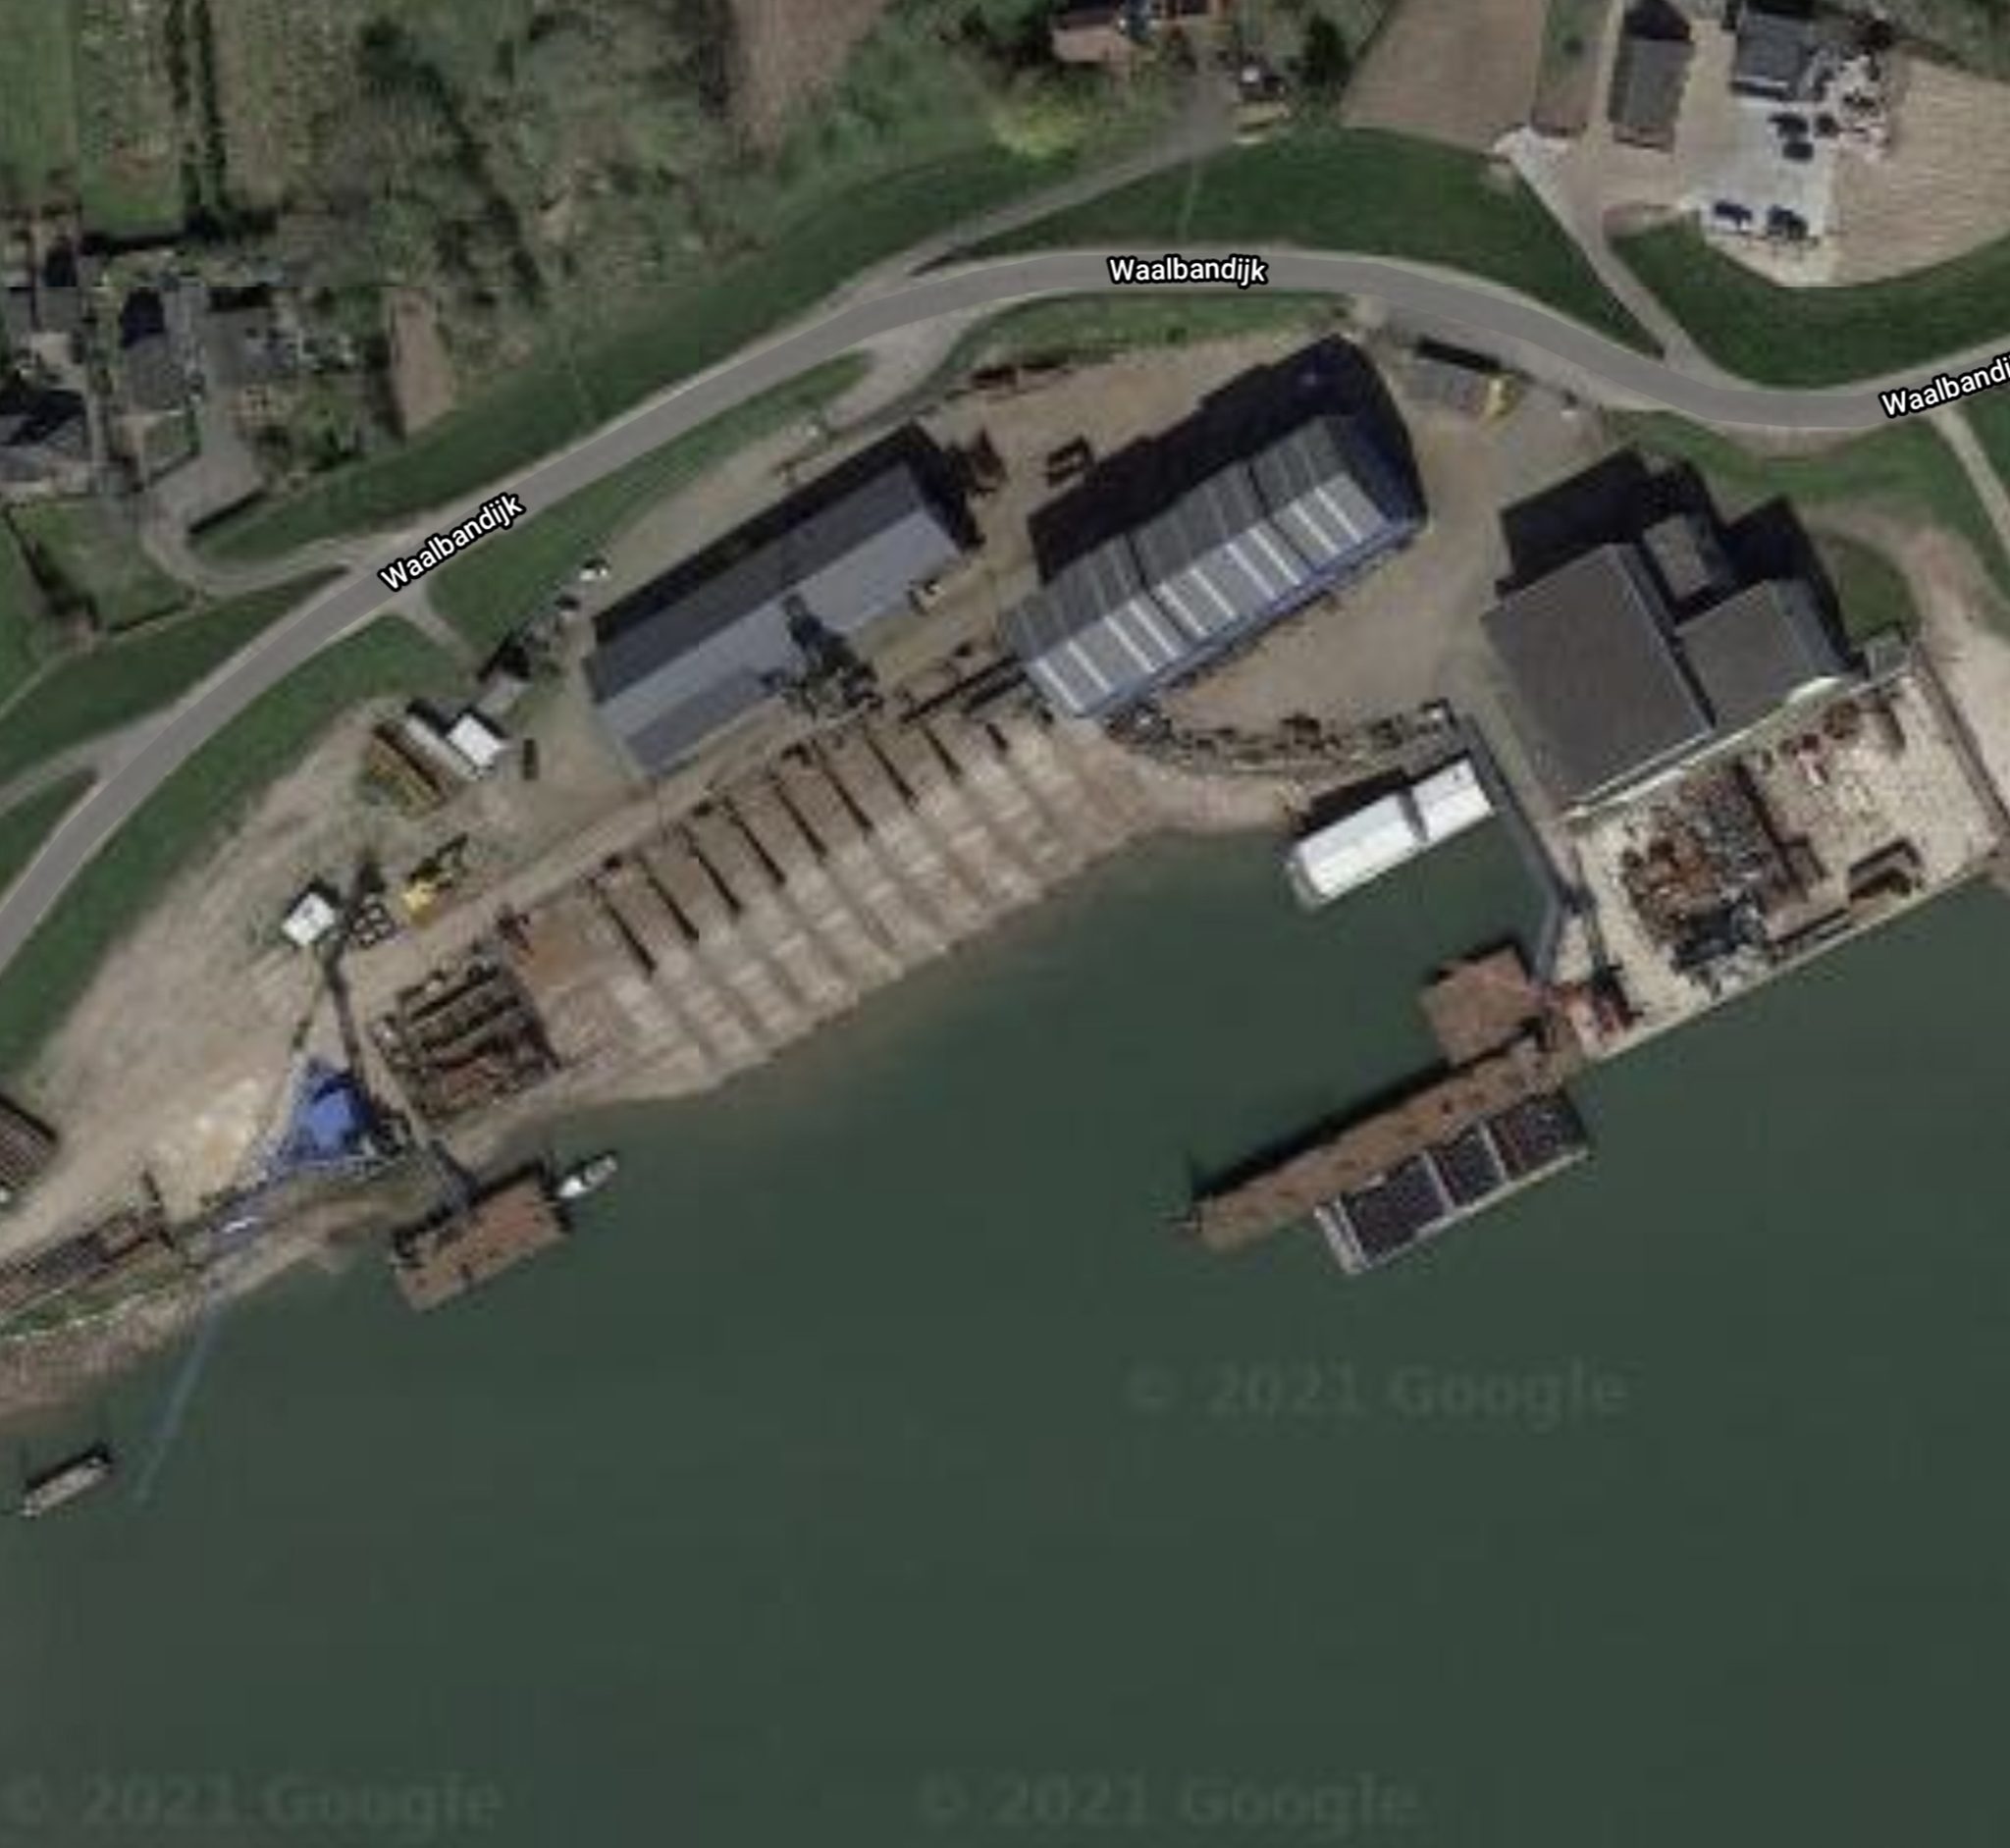 Het COA wilde in de haven van de voormalige Scheepswerf Doodewaard 300 tot 400 vluchtelingen op twee riviercruiseschepen huisvesten, maar de plek bleek niet veilig genoeg. (Foto Google Maps)